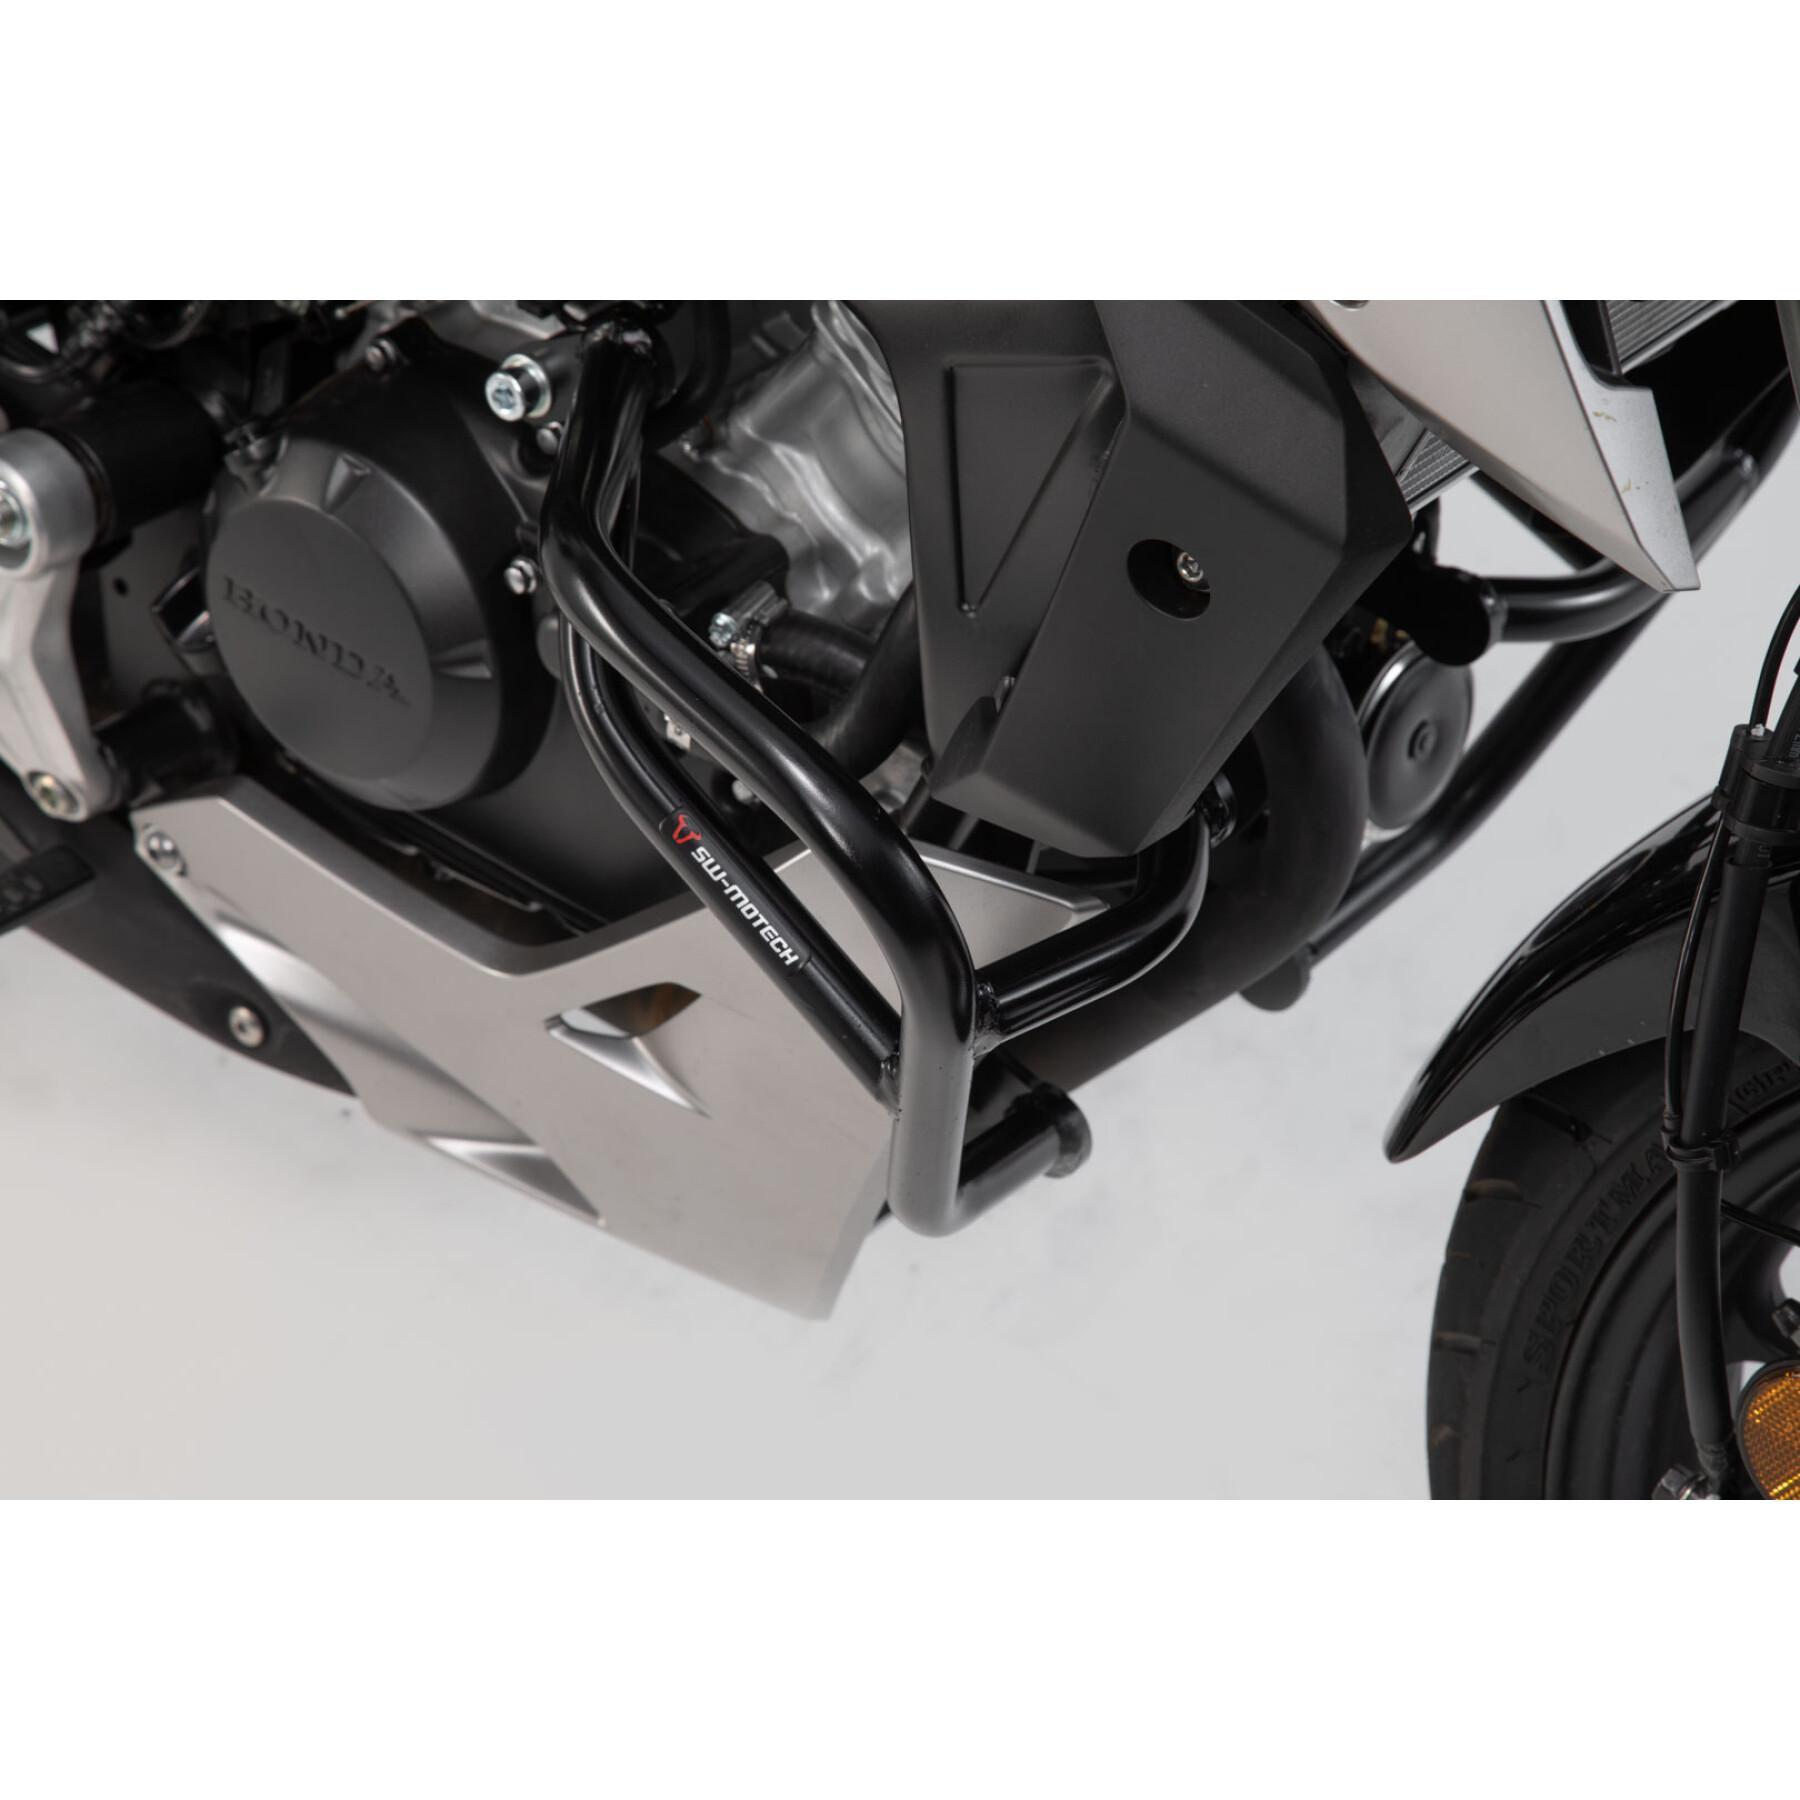 Protecciones para motos Sw-Motech Crashbar Honda Cb125r (18-)